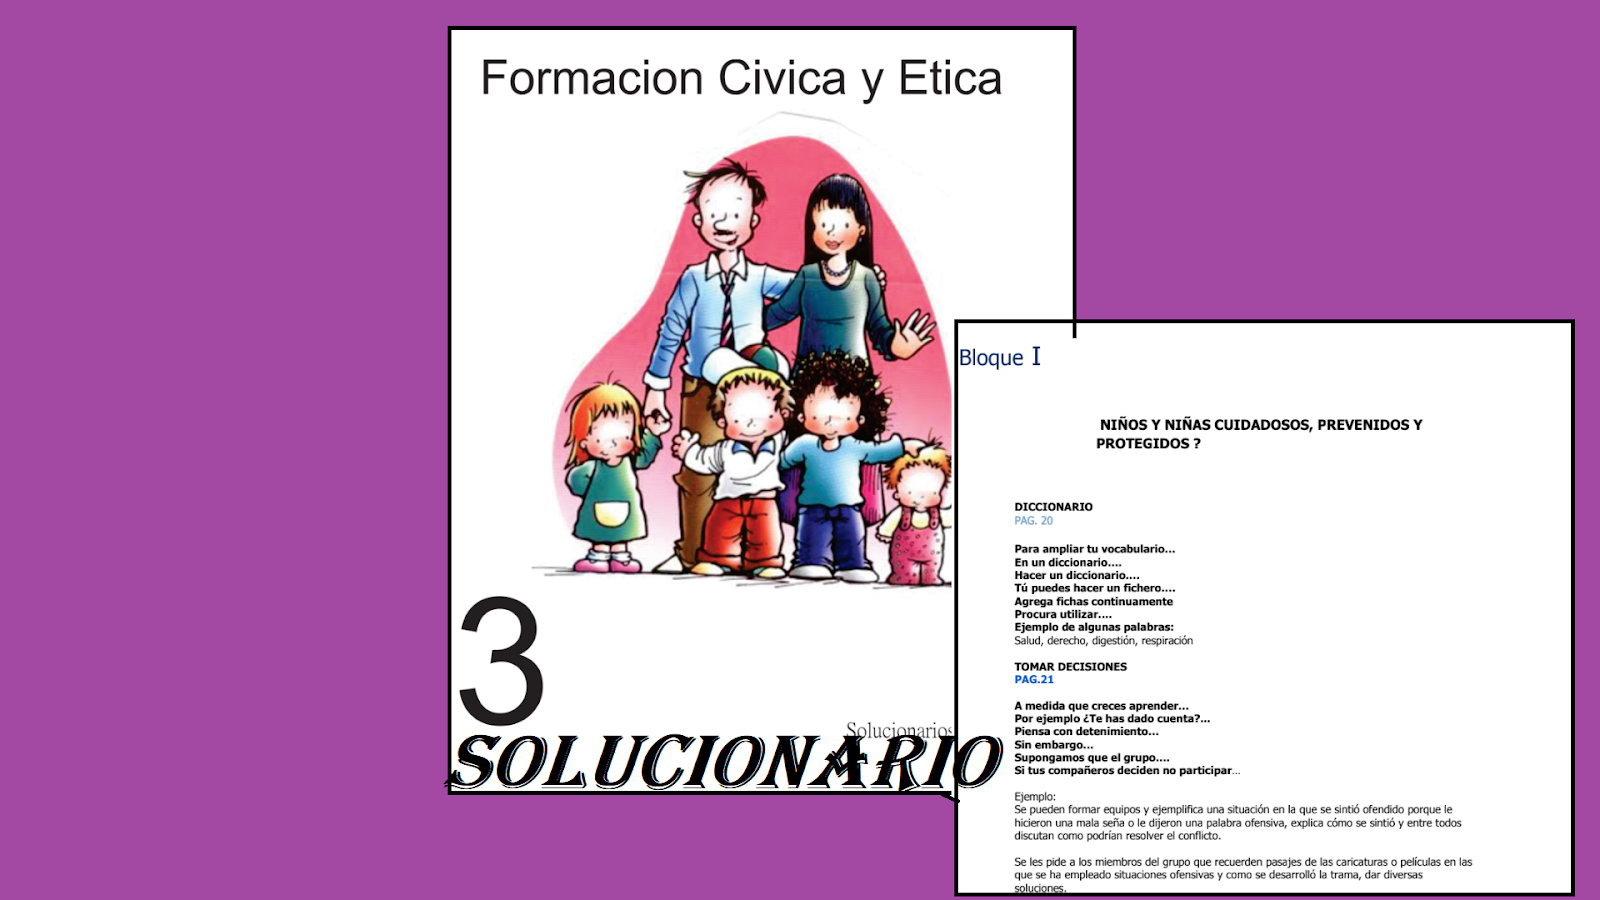 Solucionario Tercer Grado Formacion Civica Y Etica Material Educativo Primaria